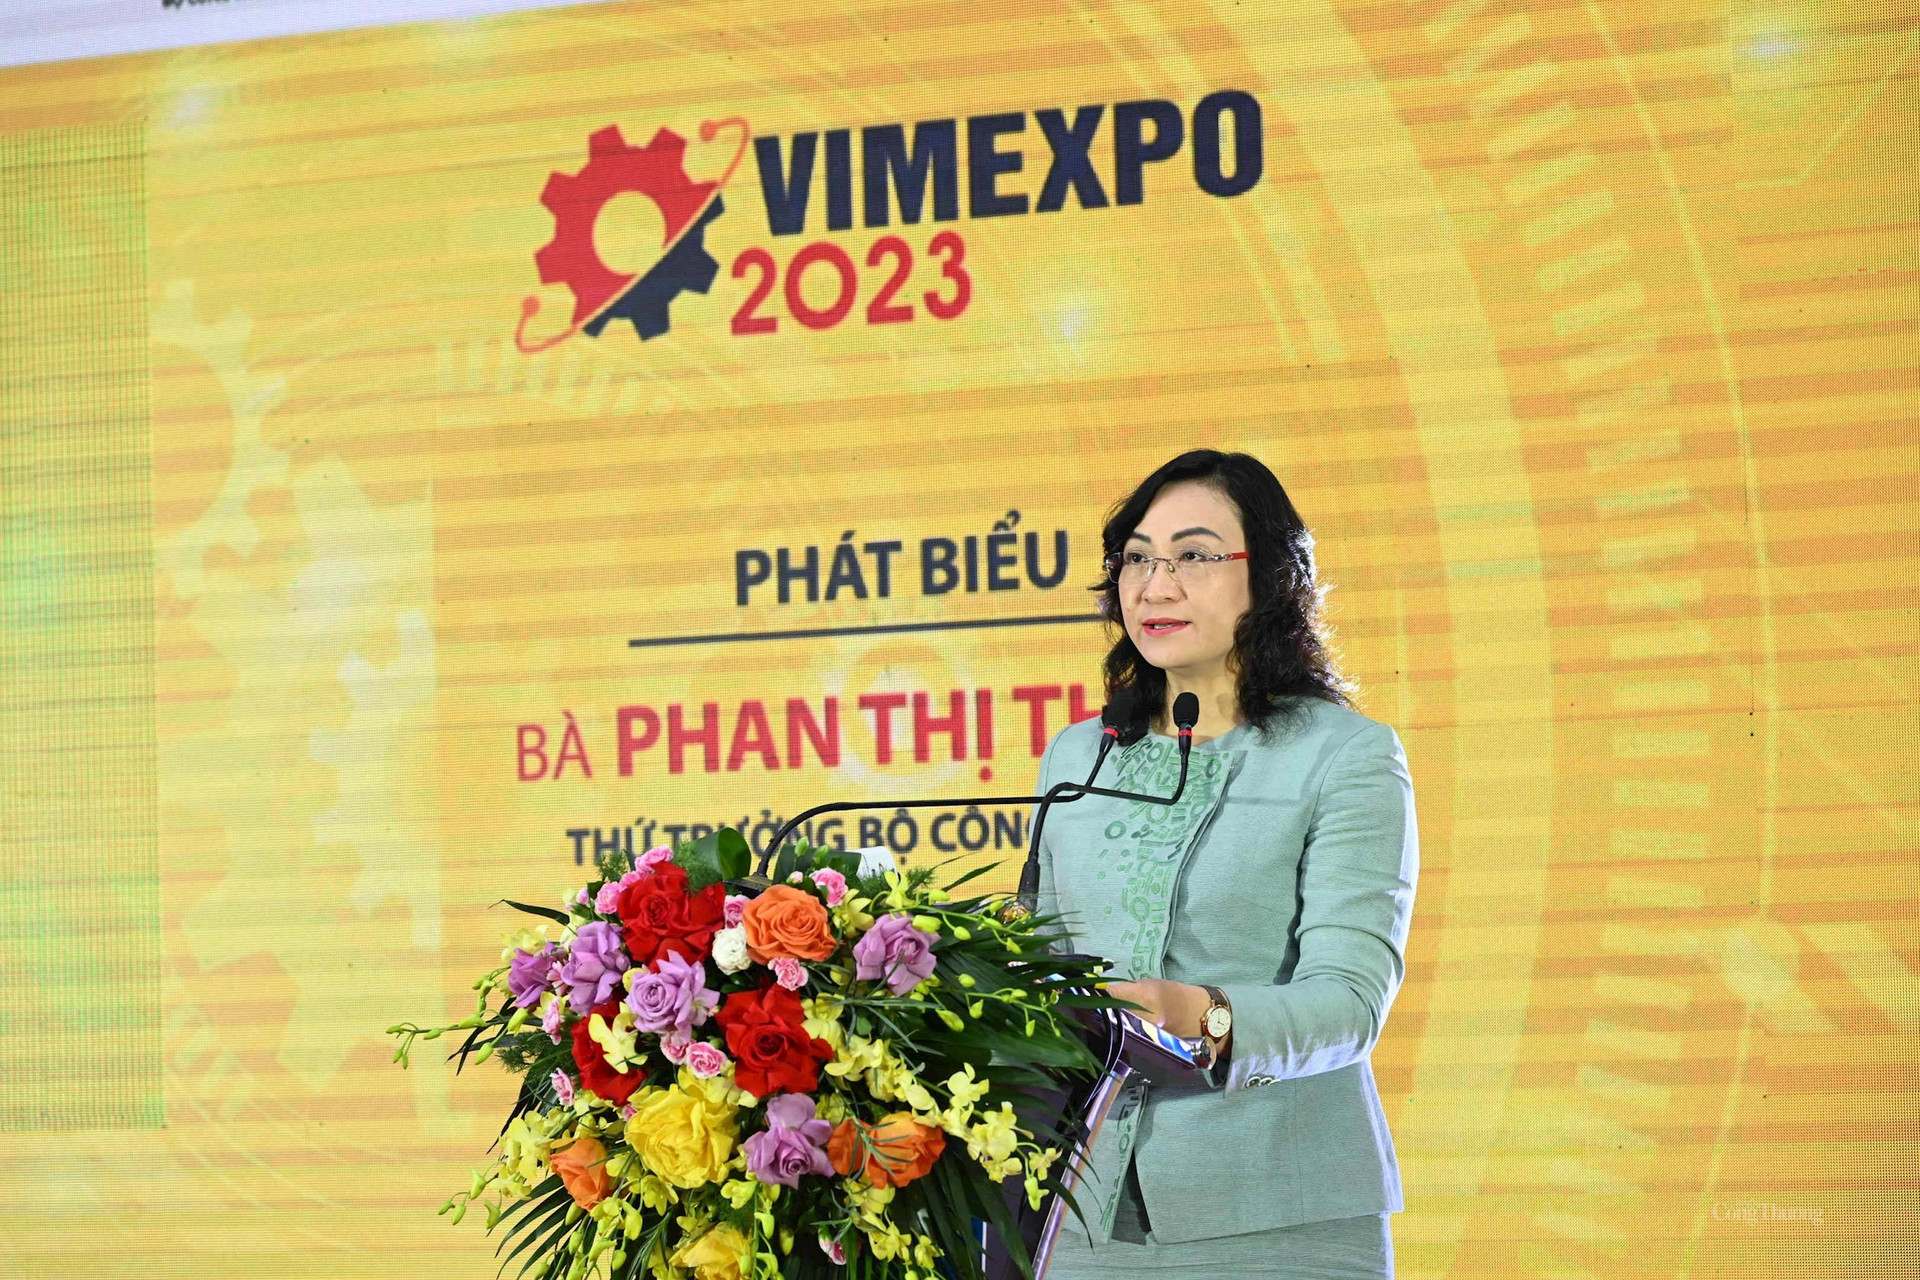 Hơn 200 doanh nghiệp tham dự triển lãm lớn nhất về công nghiệp hỗ trợ và chế biến chế tạo VIMEXPO 2023 - Ảnh 3.